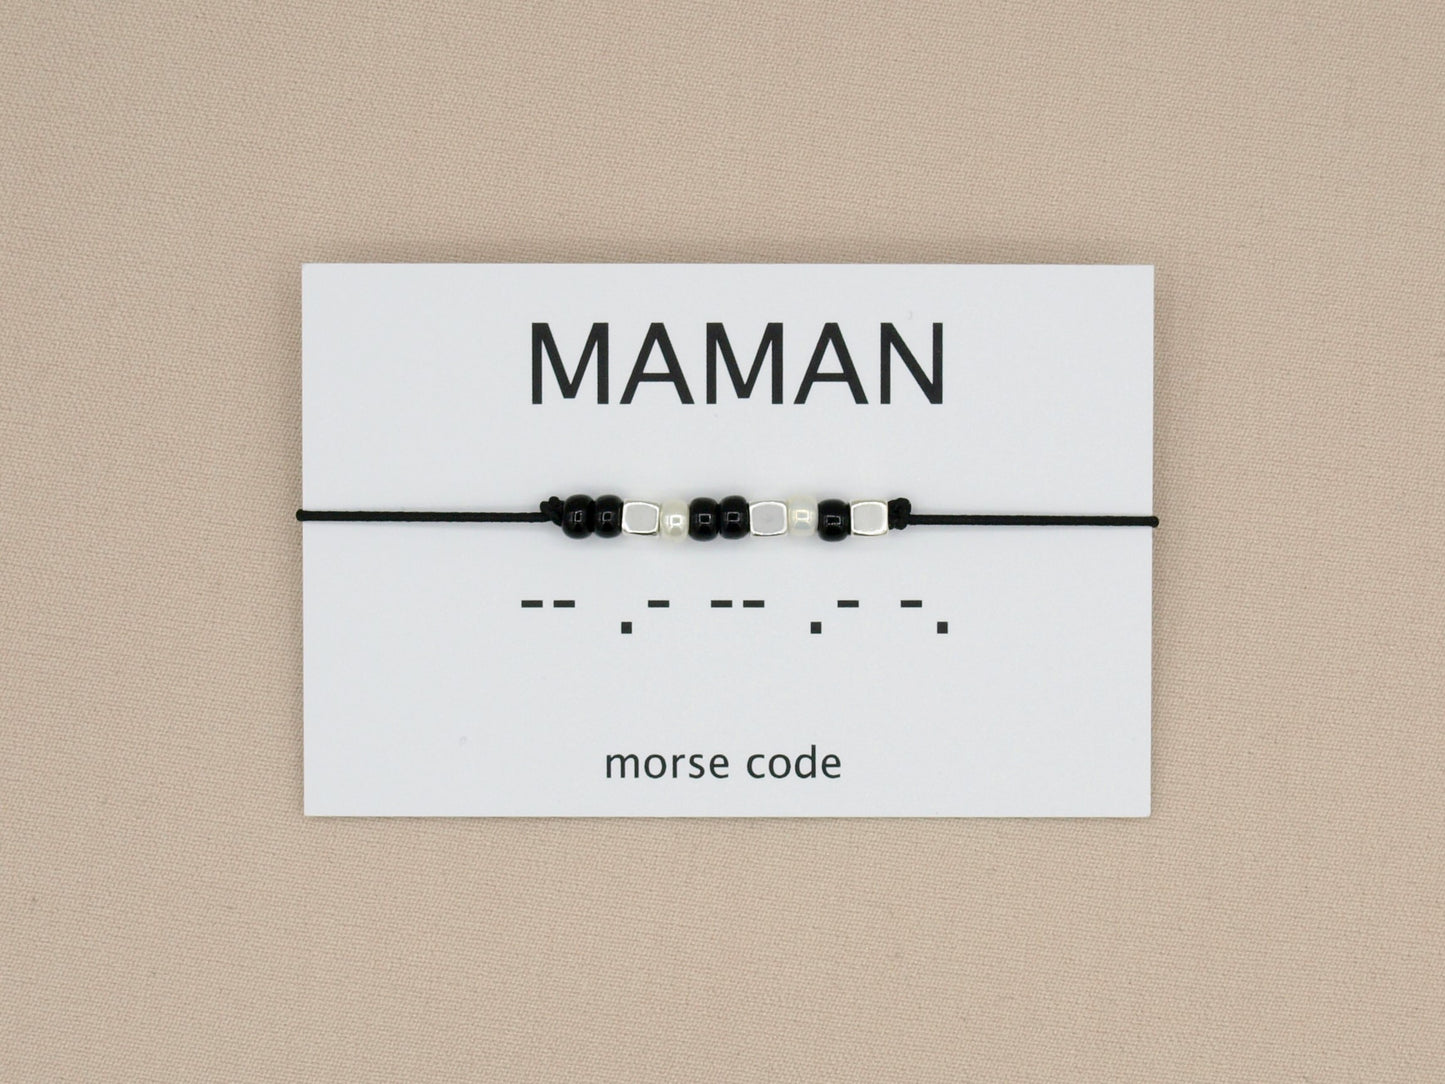 Morse code armband maman